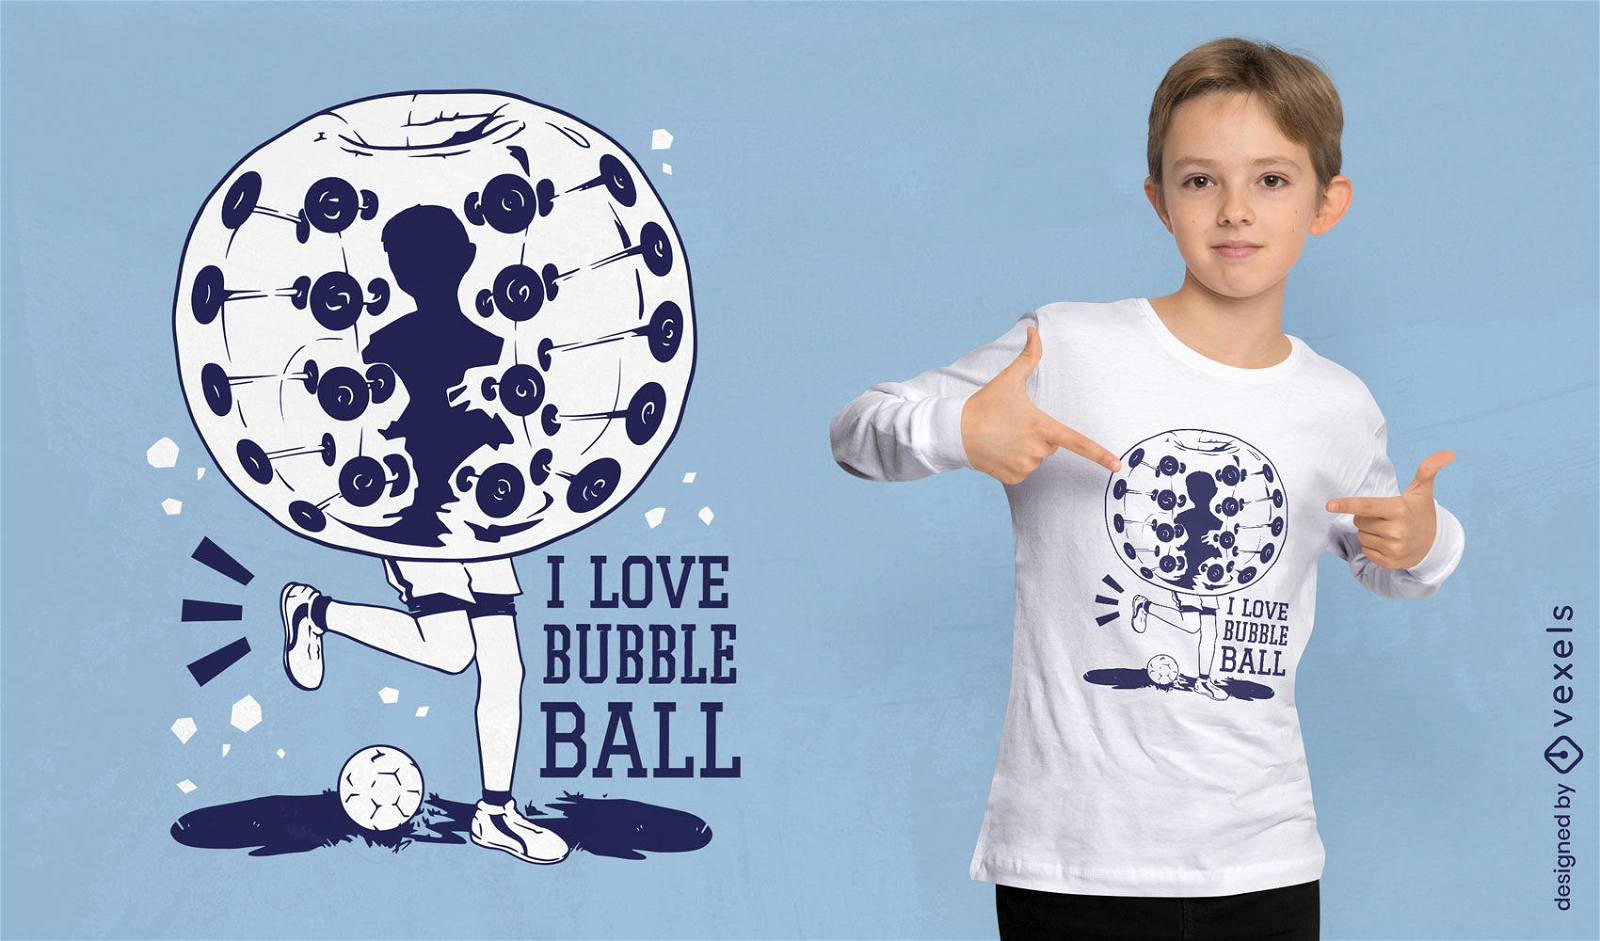 Dise?o de camiseta deportiva de pelota de burbujas.